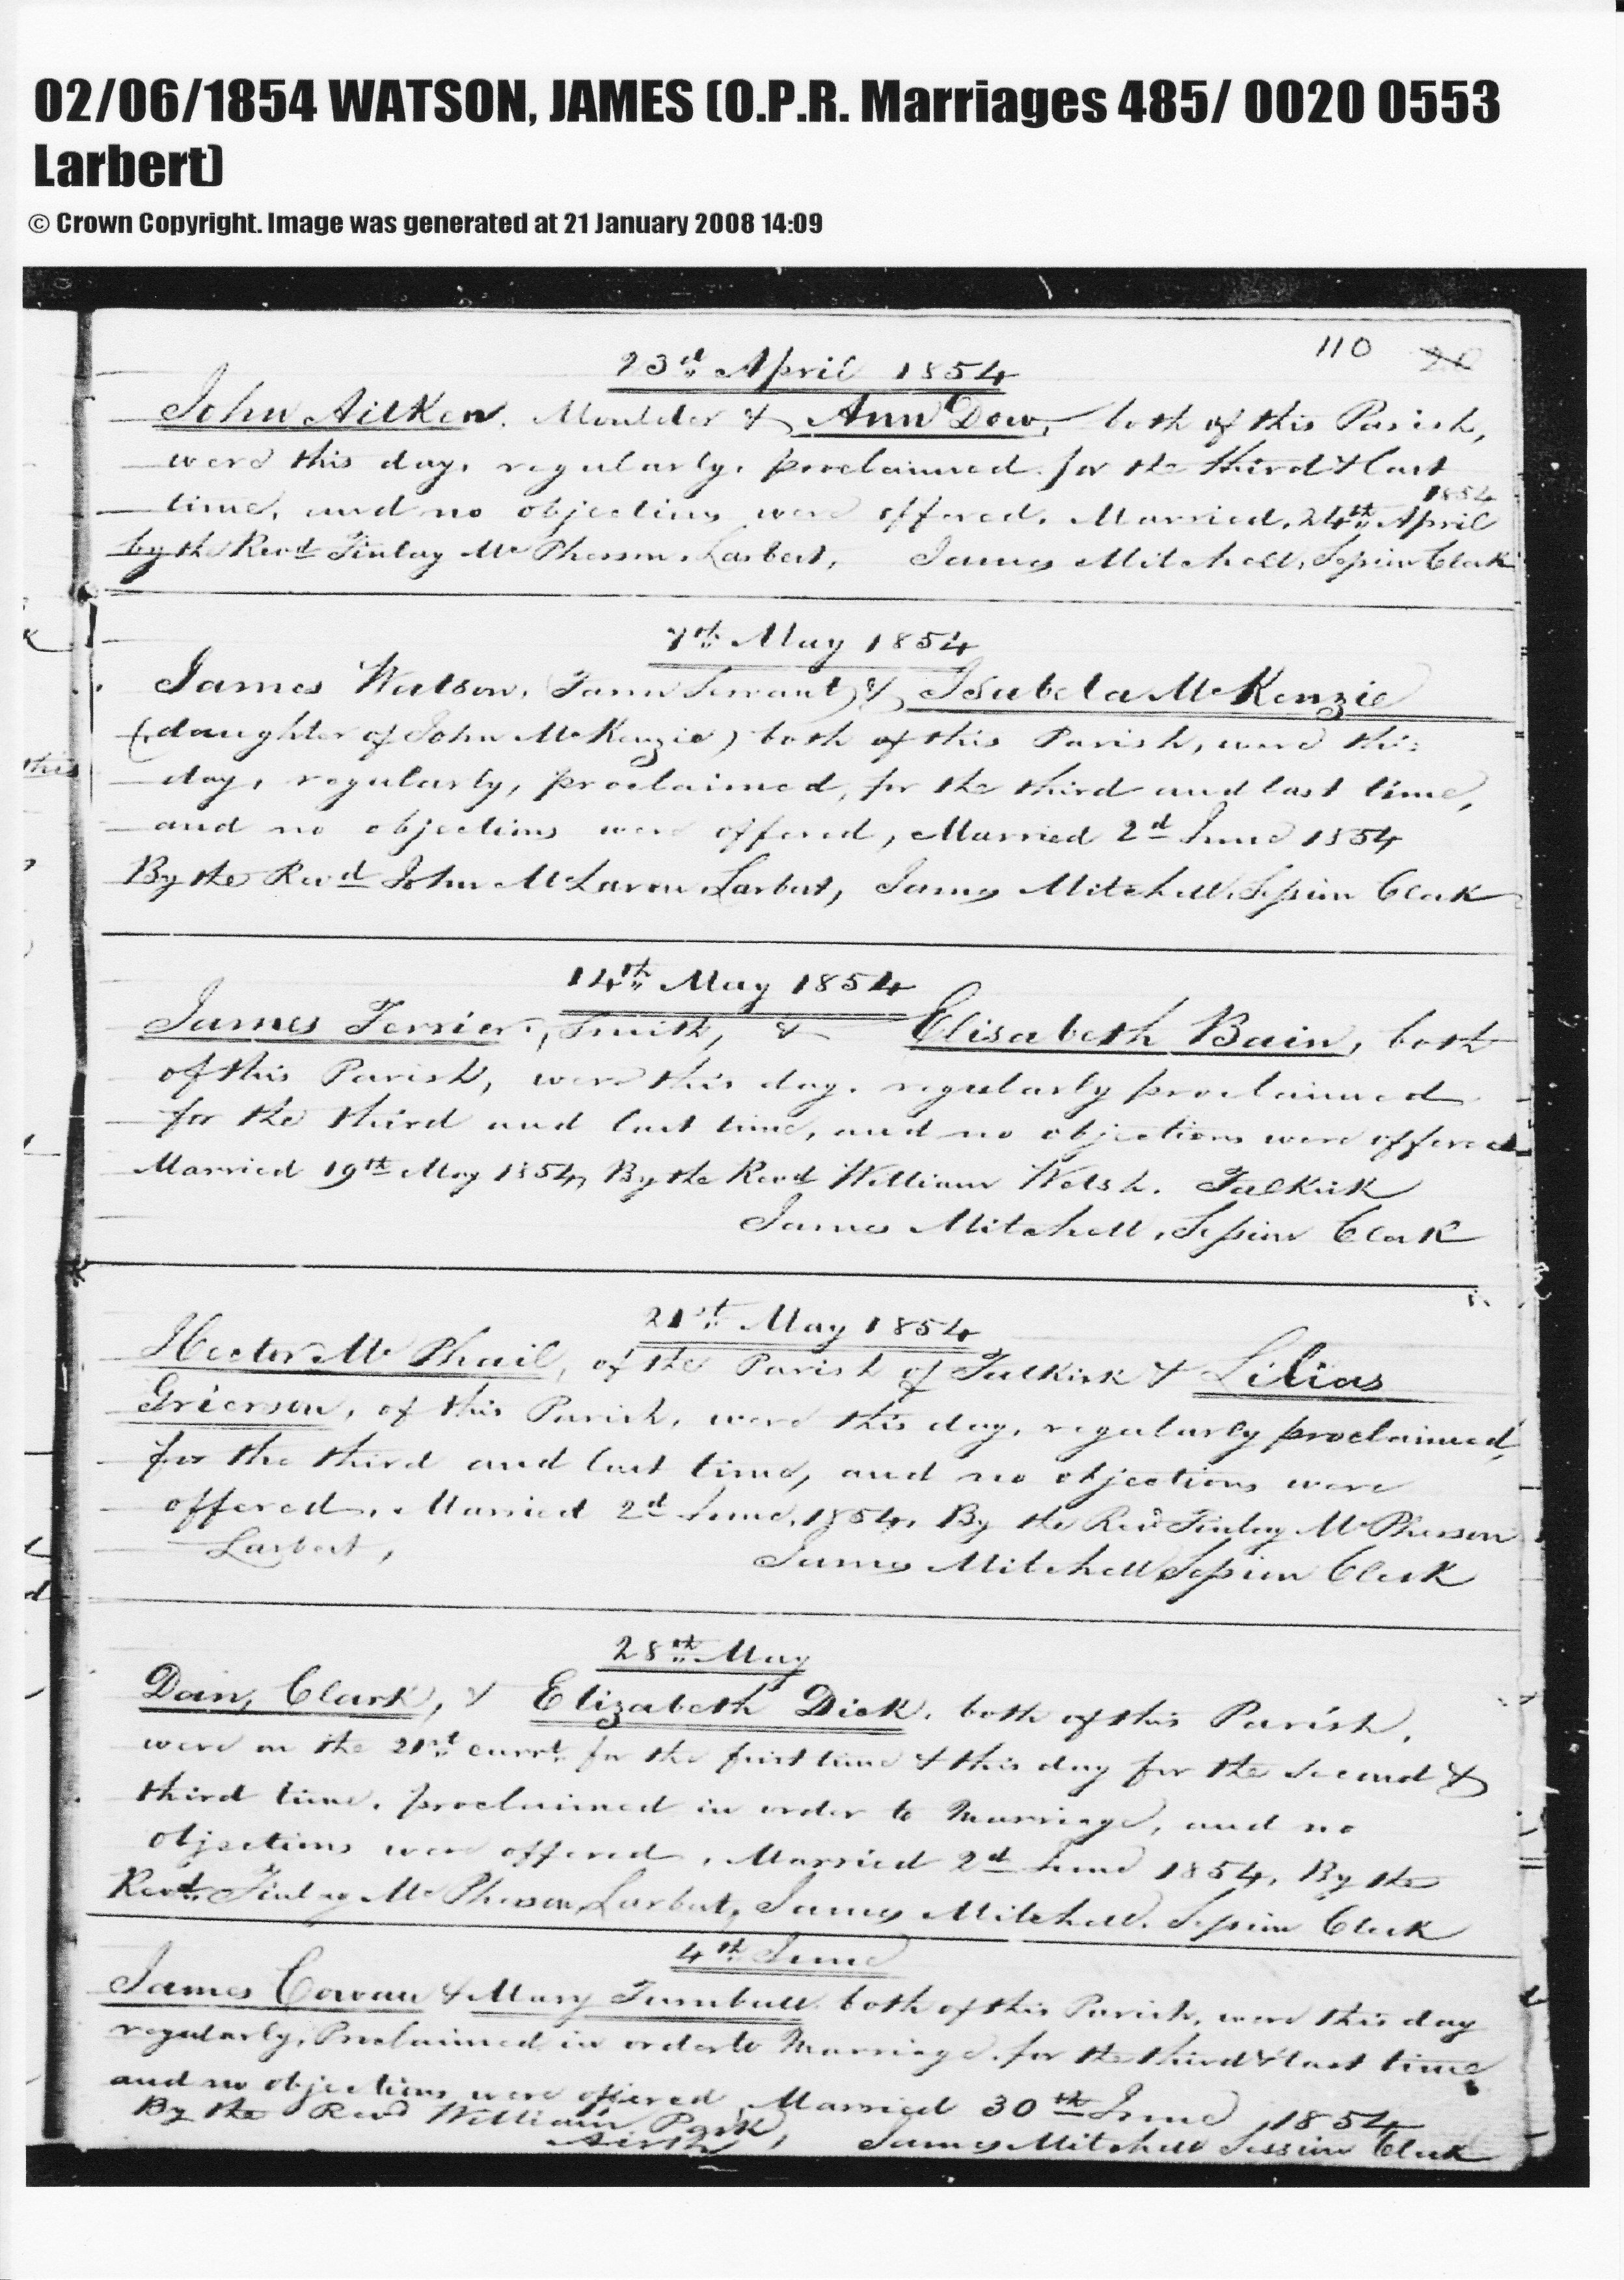 Marriage Register Entry 1854 James WATSON to Isabella McKENZIE, June 2, 1854